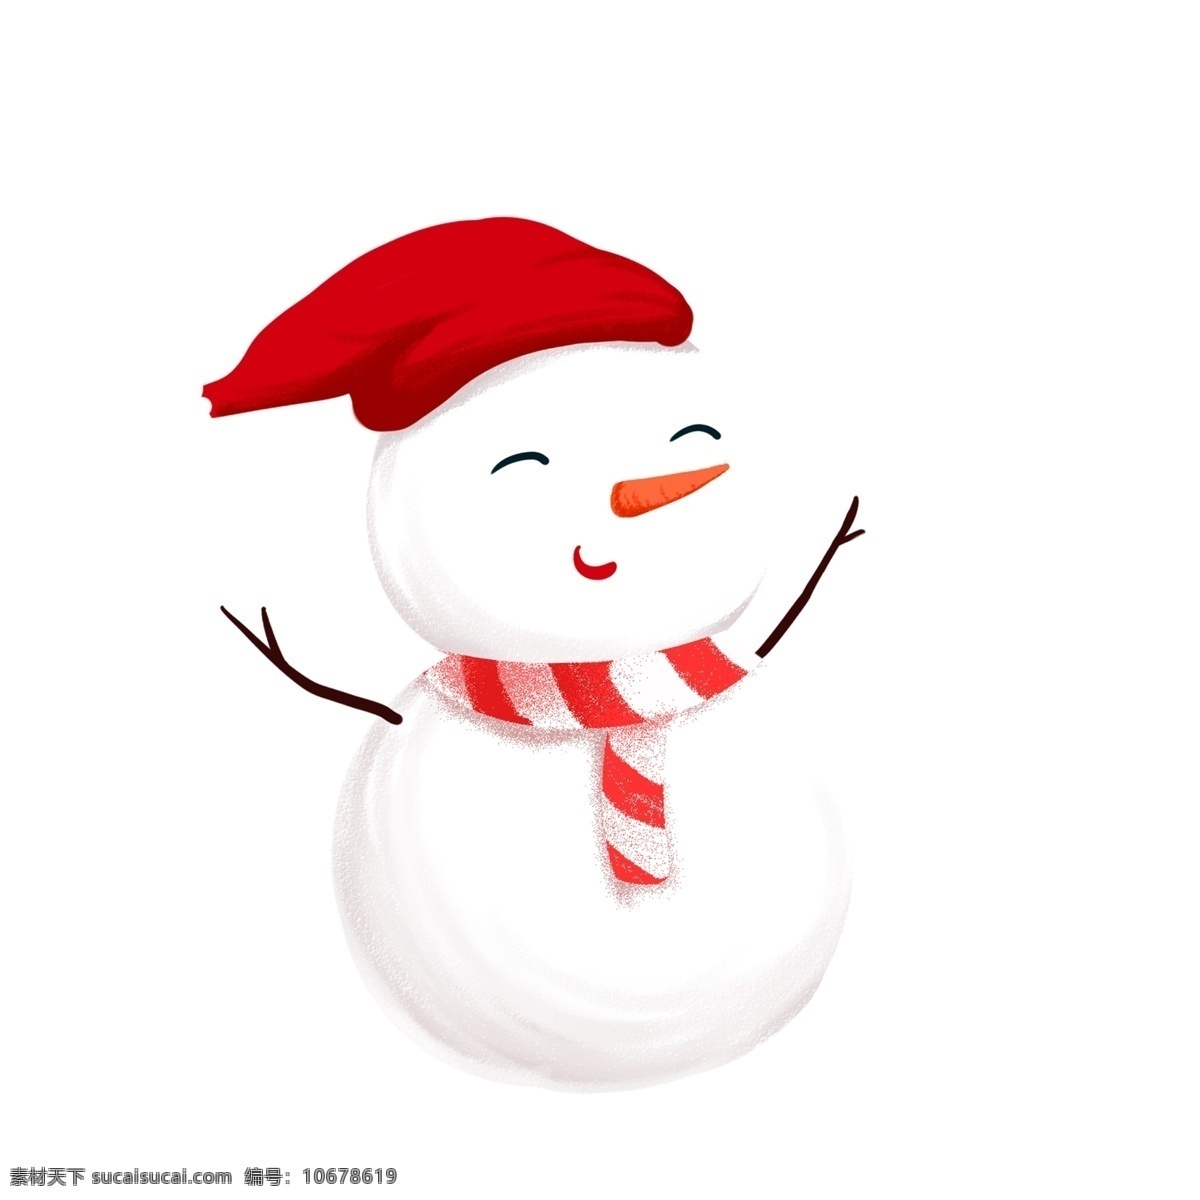 圣诞节 可爱 微笑 雪人 卡通 插画 圣诞帽子 围巾 树杈